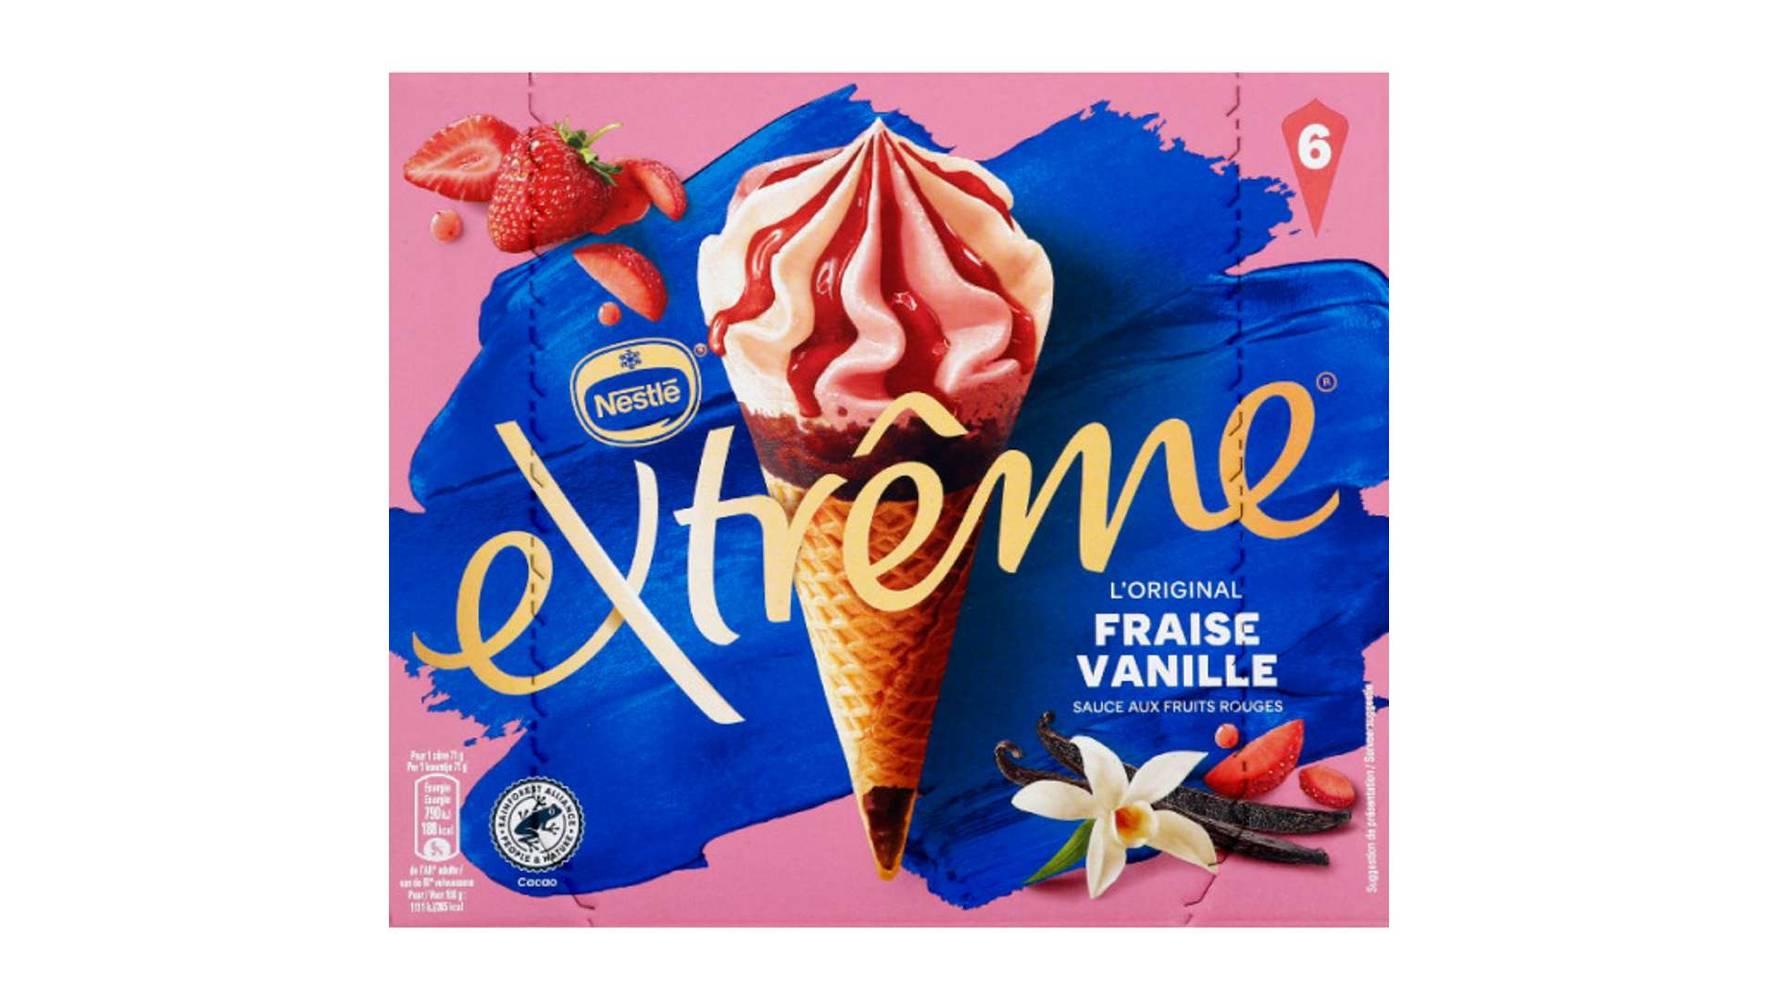 EXTREME NESTLE Cônes extrême fraise vanille sauce aux fruits rouges 6x71g Les 6, 426g